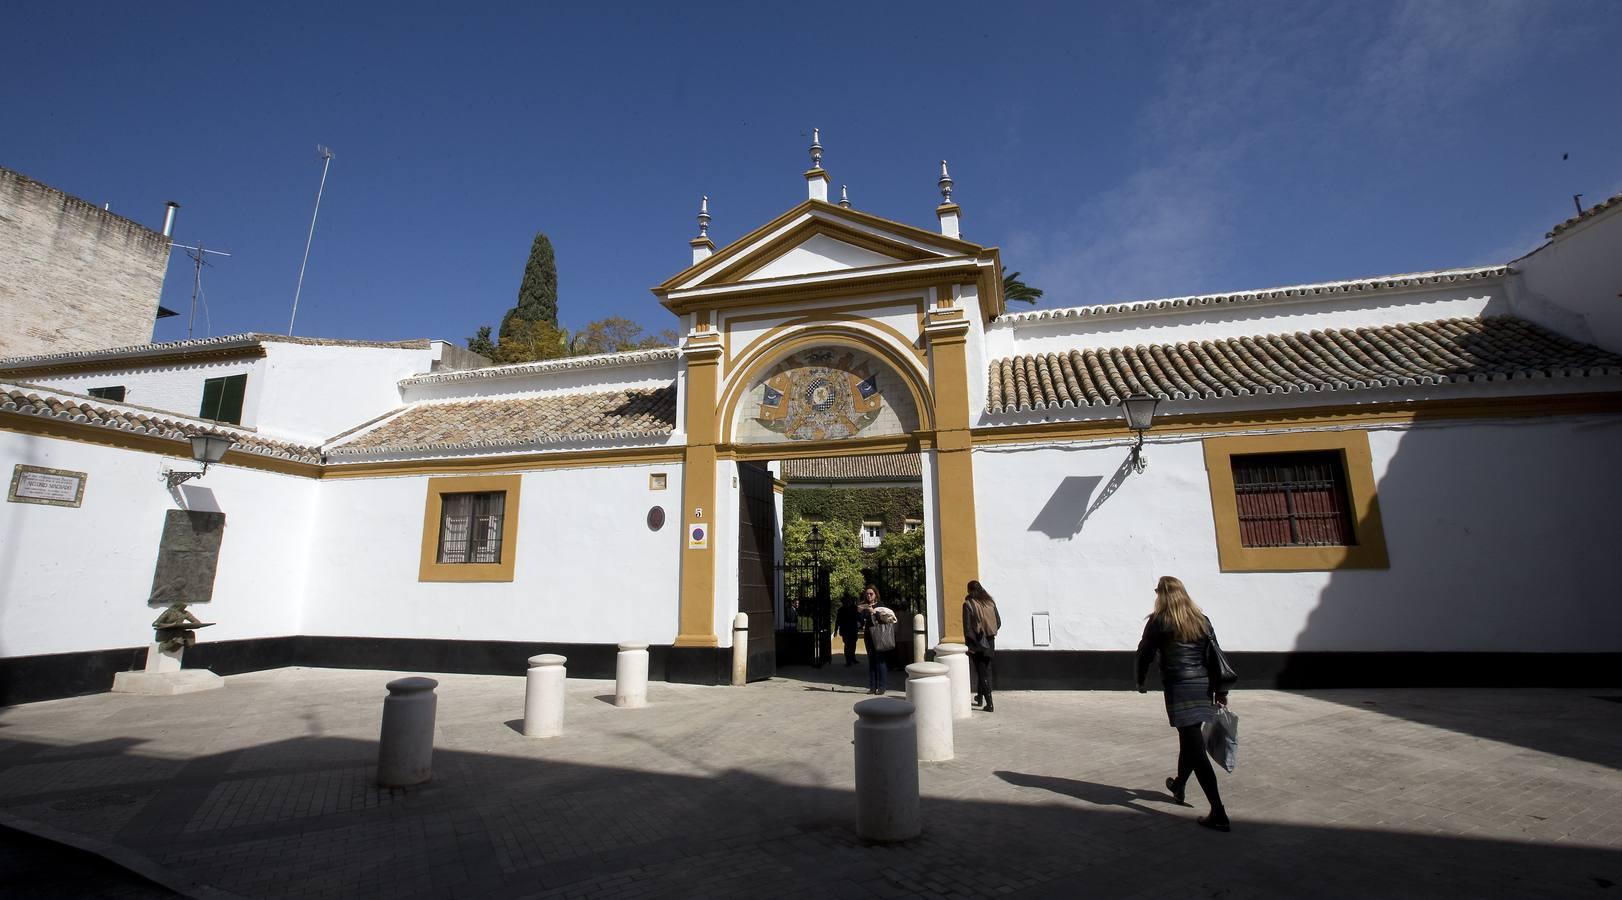 Ruta de las casas palacio de Sevilla, en imágenes